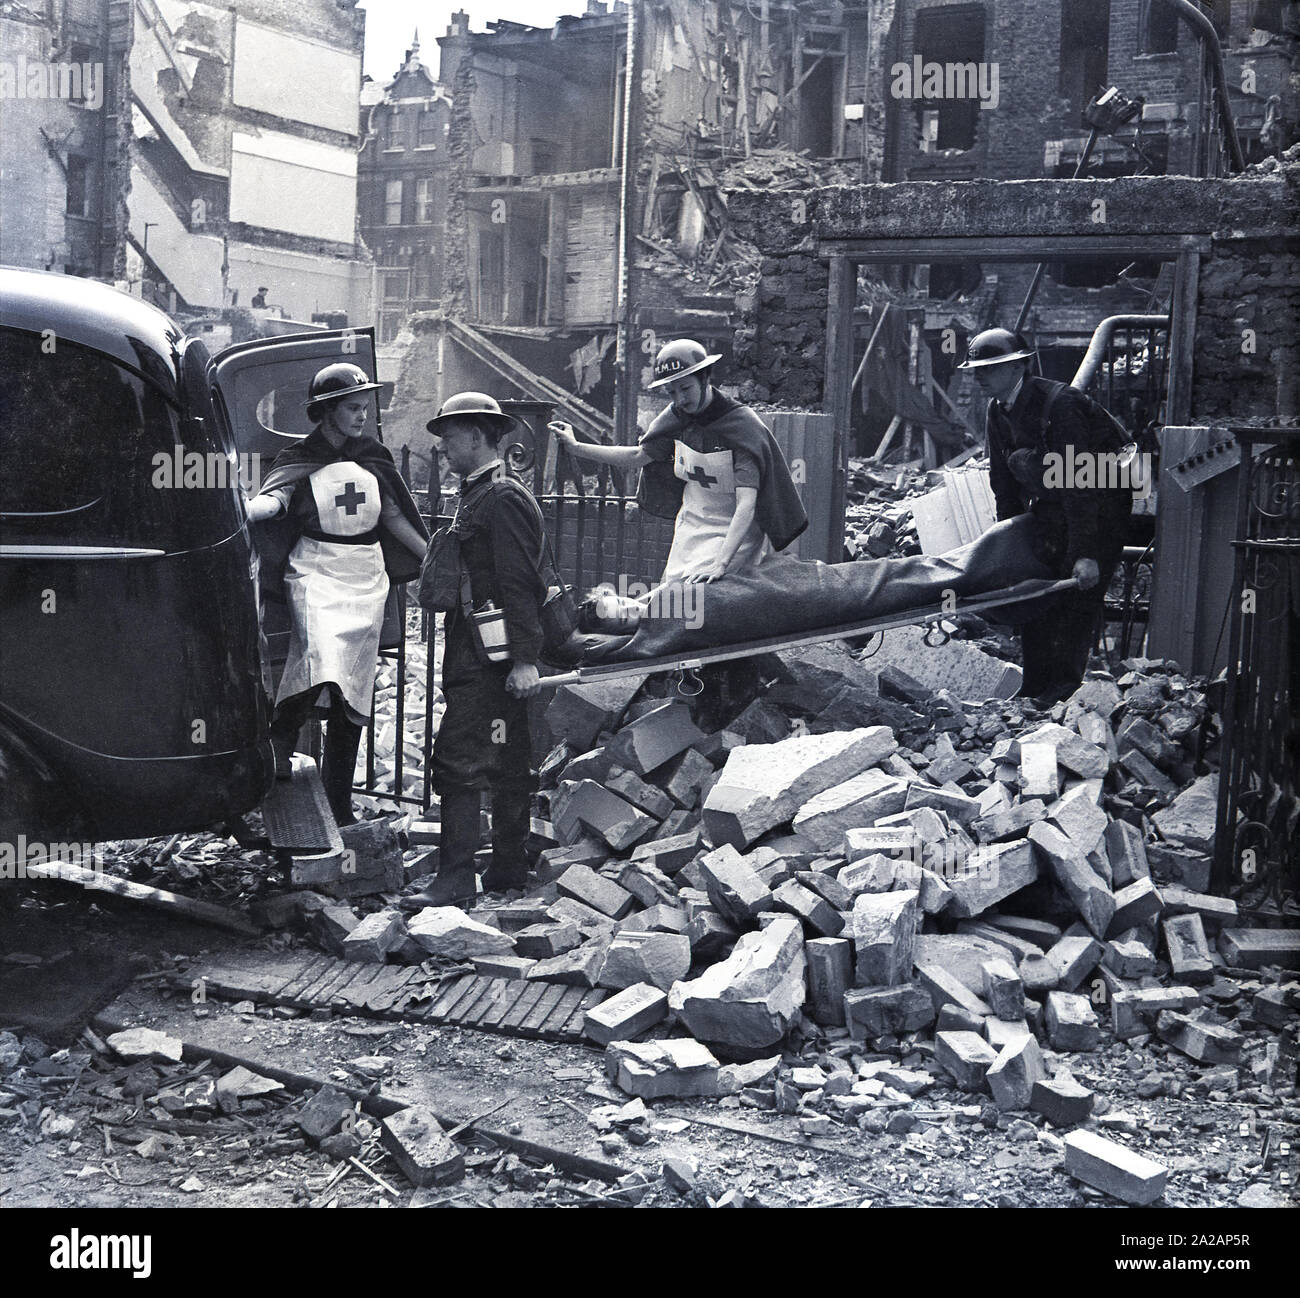 1940, storico, Londra durante il blitz, due volontari maschi operai che trasportano un civile paziente su una barella da una bomba edificio danneggiato nel retro di un furgone a seguito di un raid aereo, accompagnato dal MMU infermieri, Durante WW2, Inghilterra, Regno Unito. Foto Stock